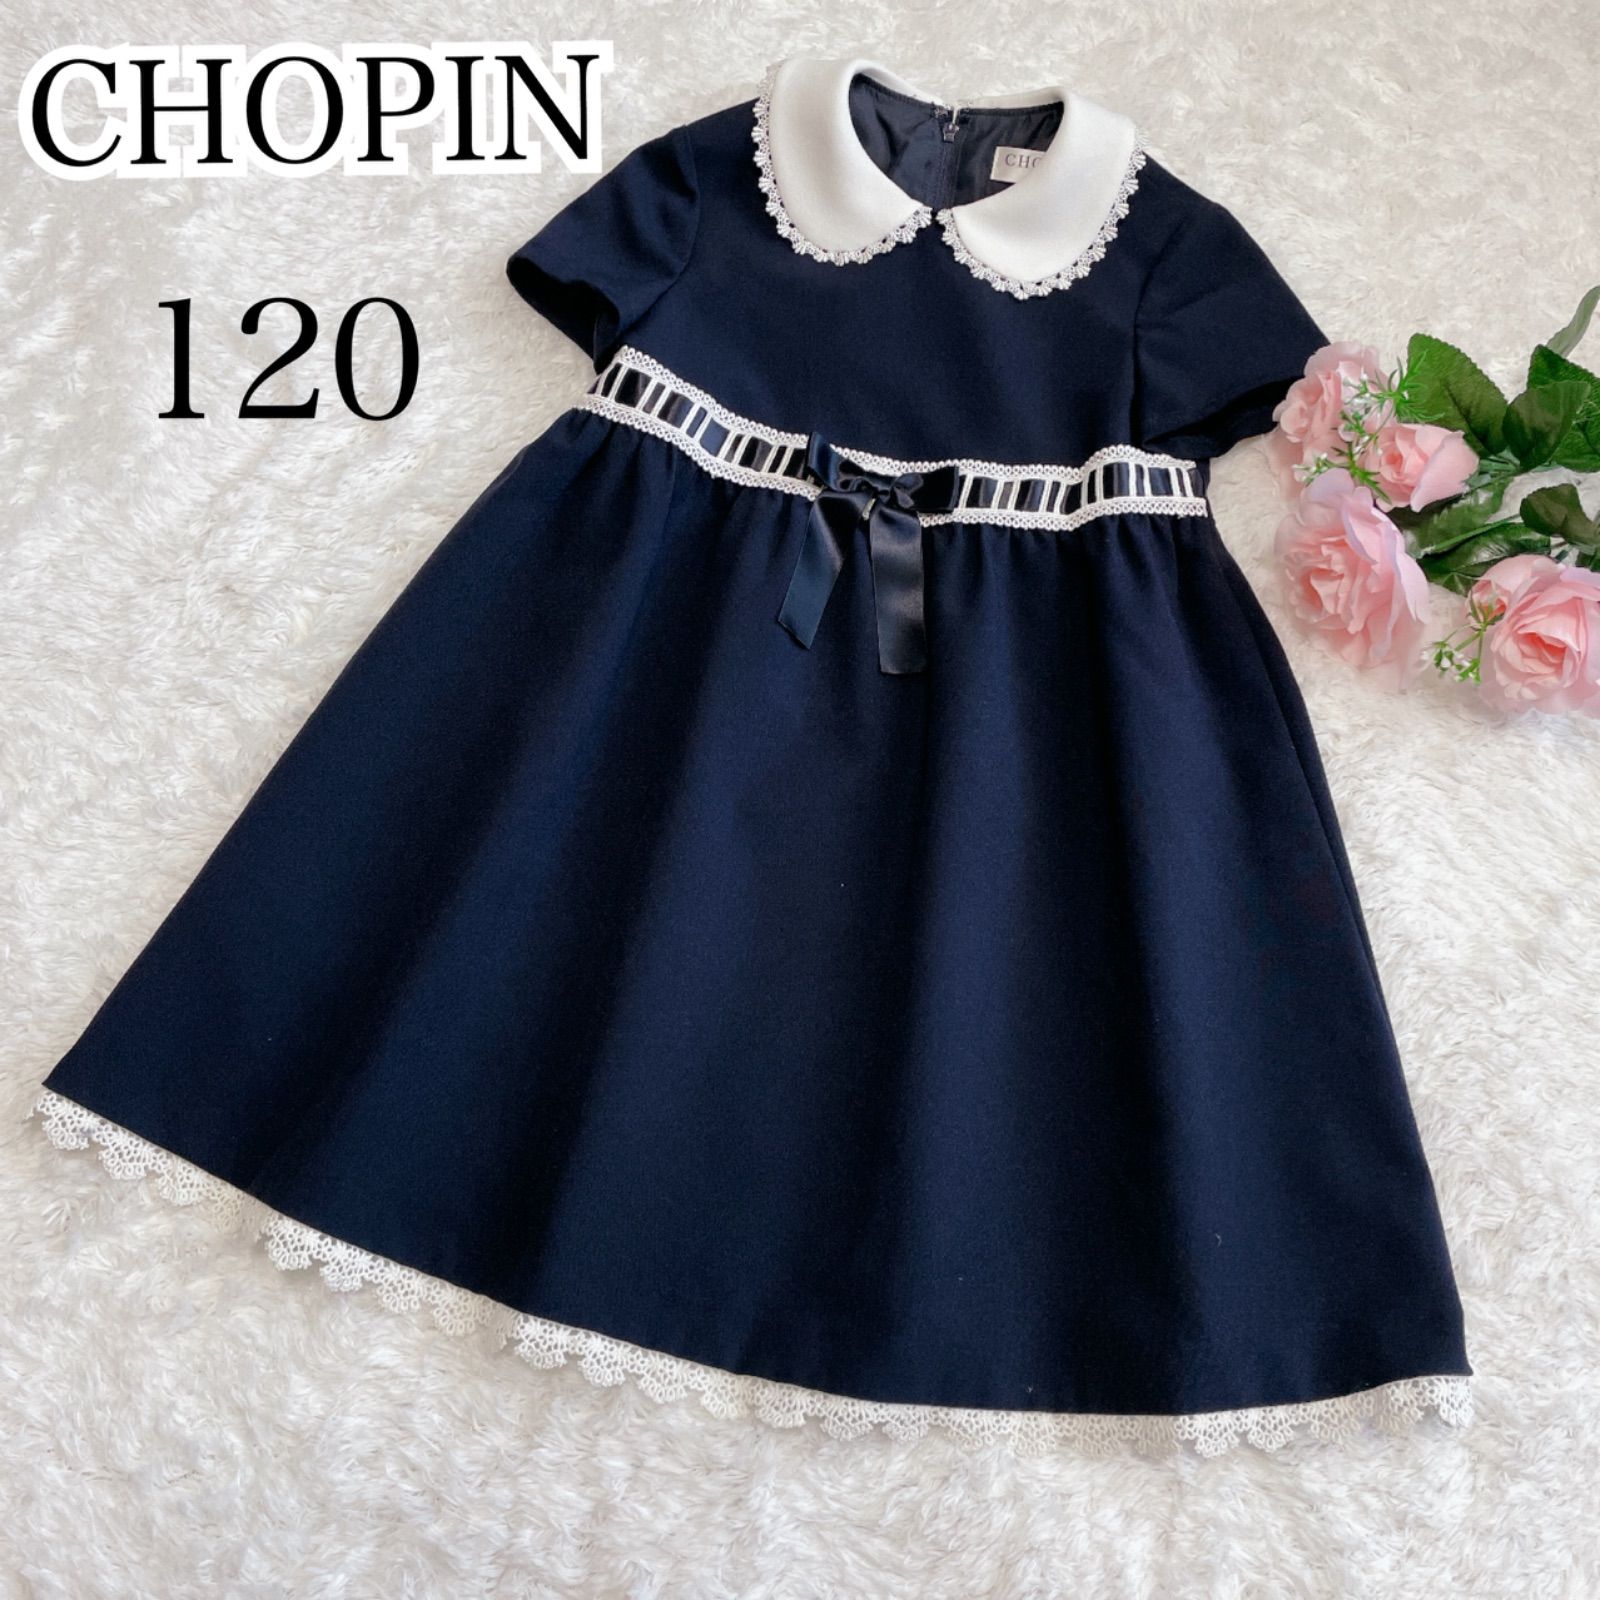 美品 CHOPIN ショパン 120 フォーマルワンピース 半袖 ネイビー 濃紺 